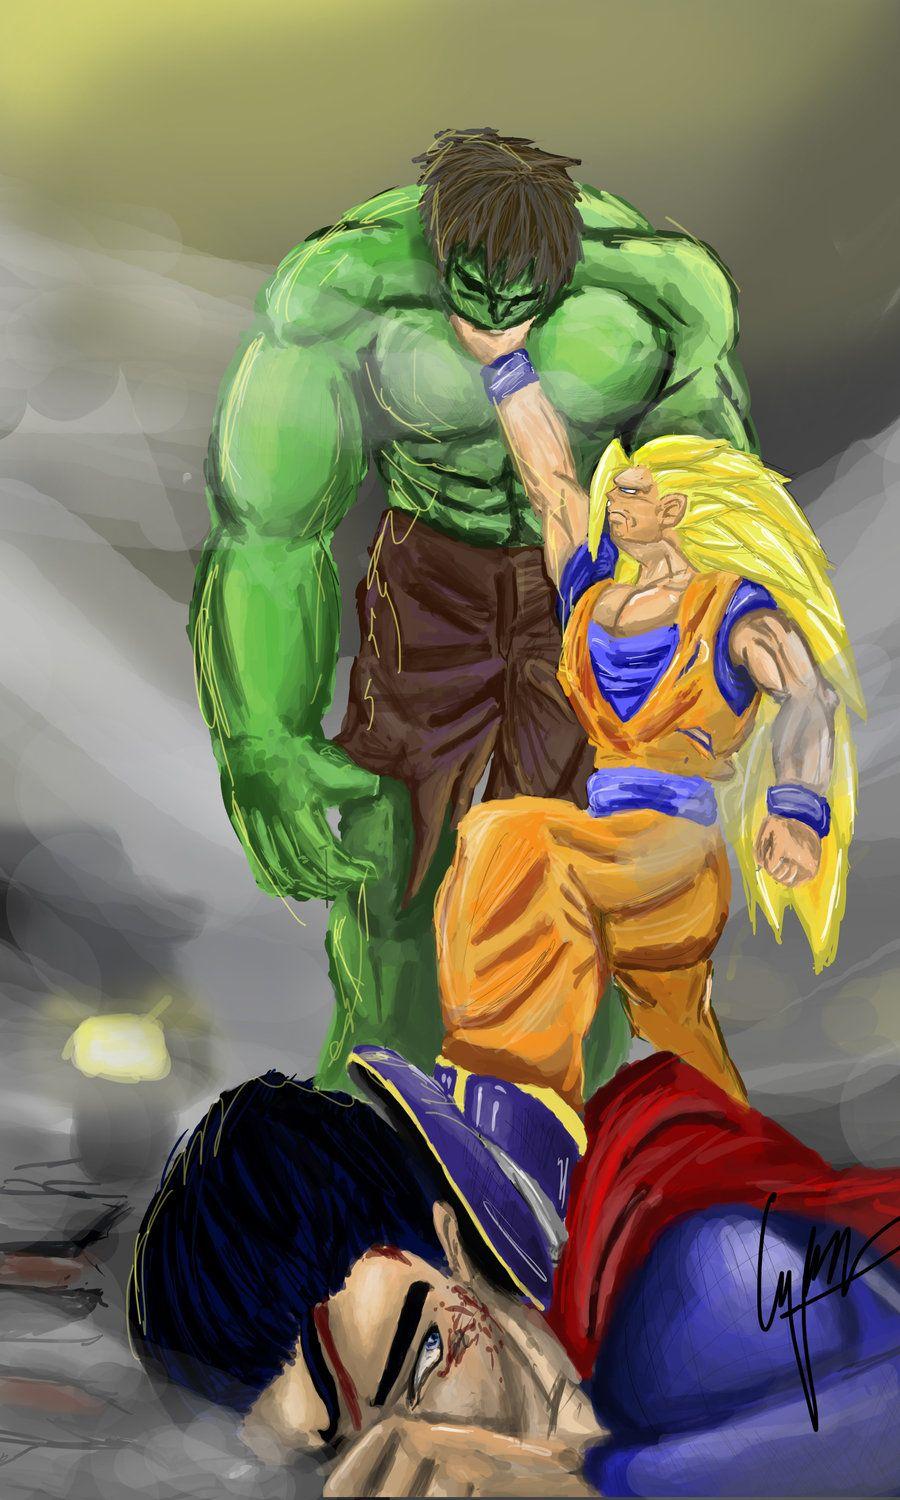 Goku vs Hulk vs Superman. Image